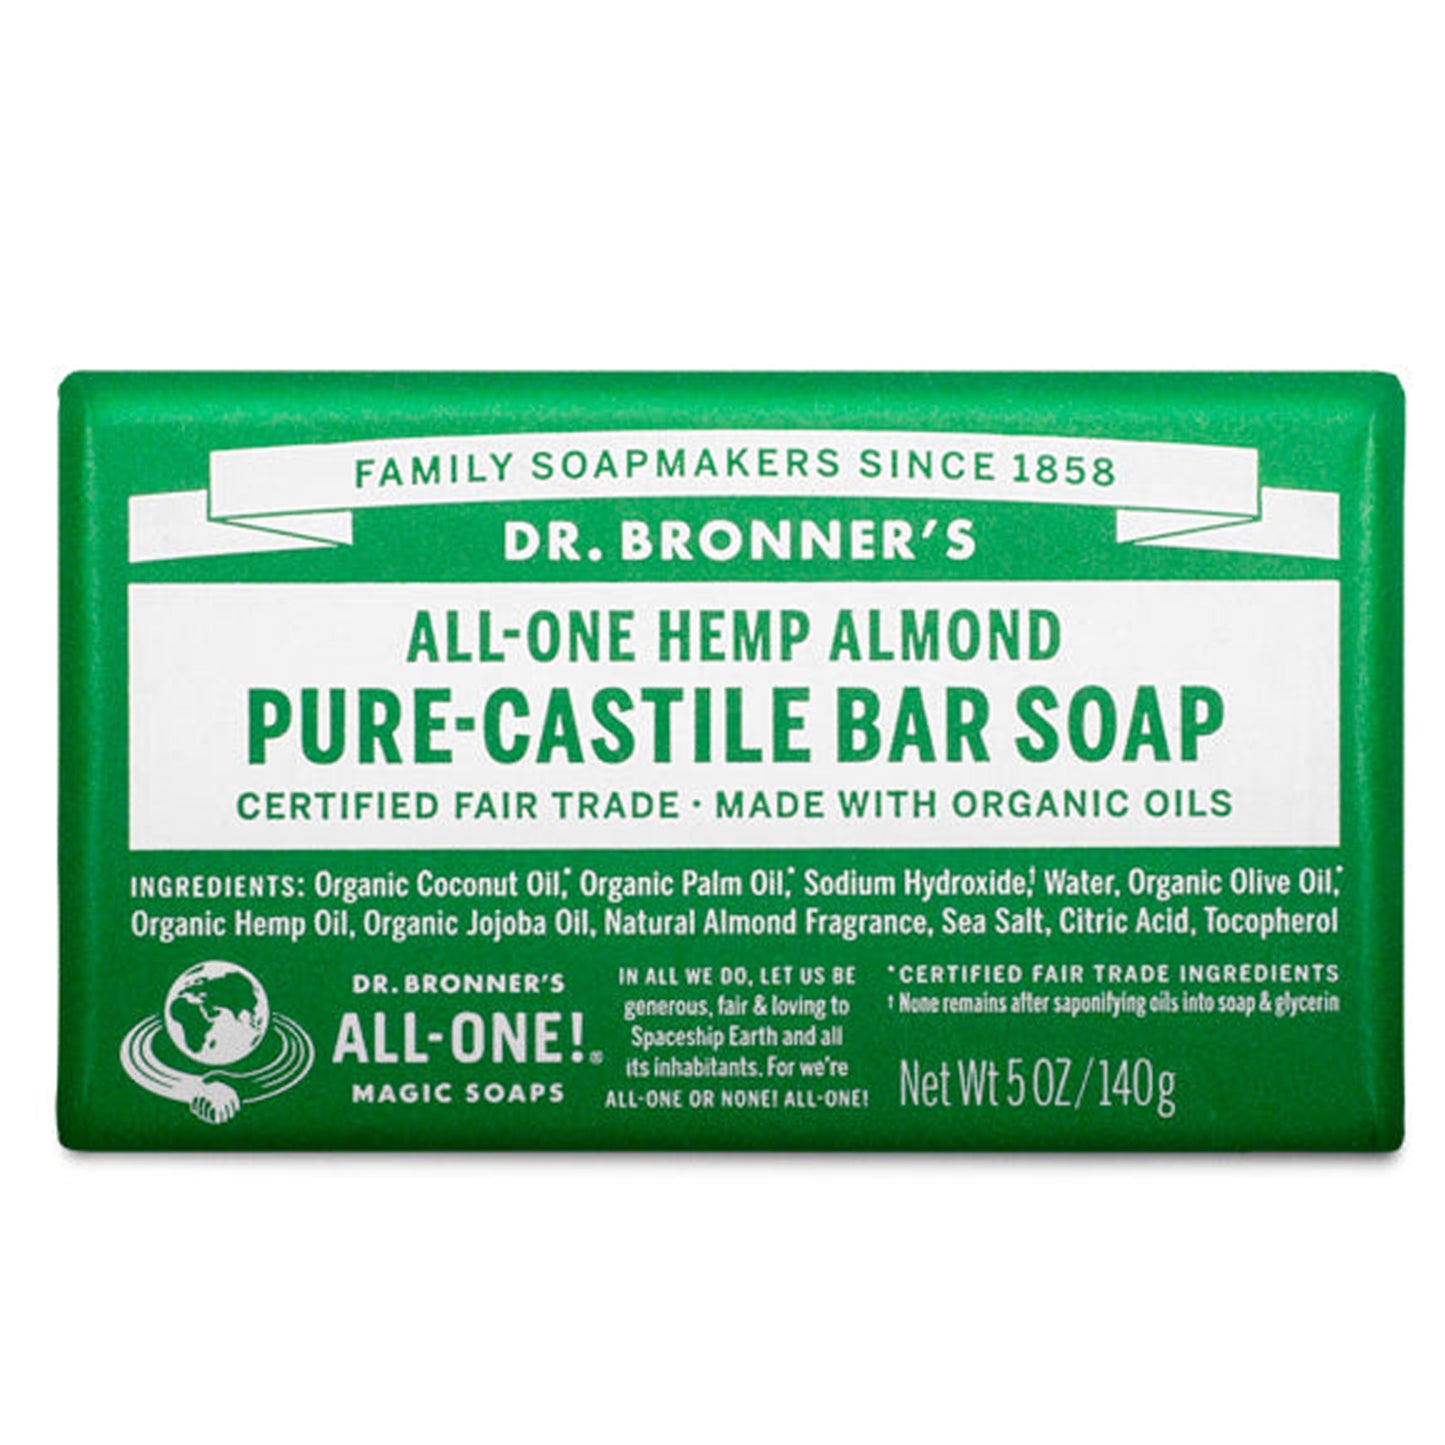 Pure-Castile Bar Soaps